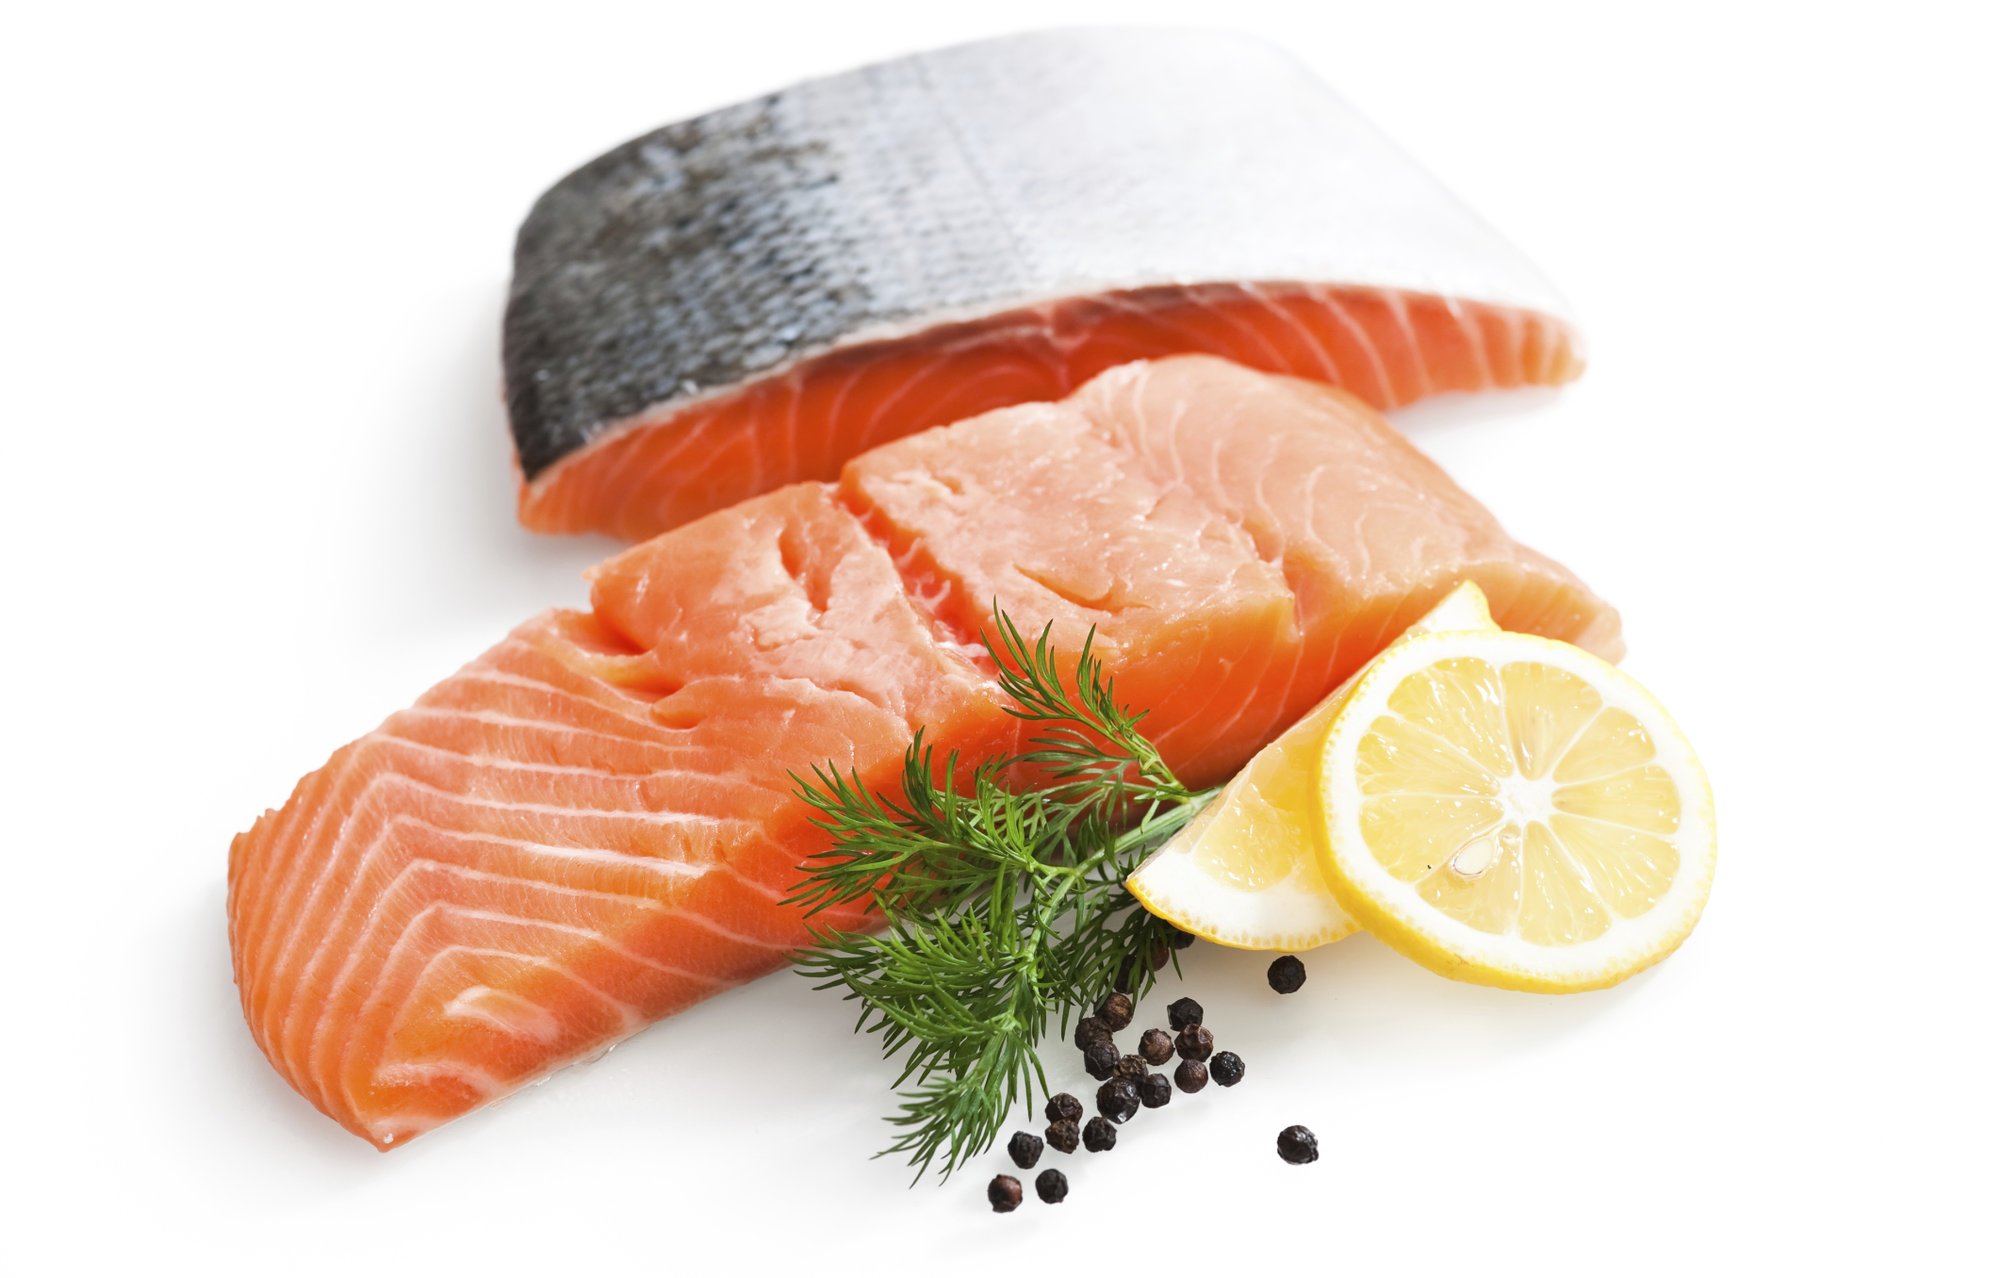   Ăn nhiều cá để giúp bộ ngực khỏe mạnh và ngăn ngừa ung thư  